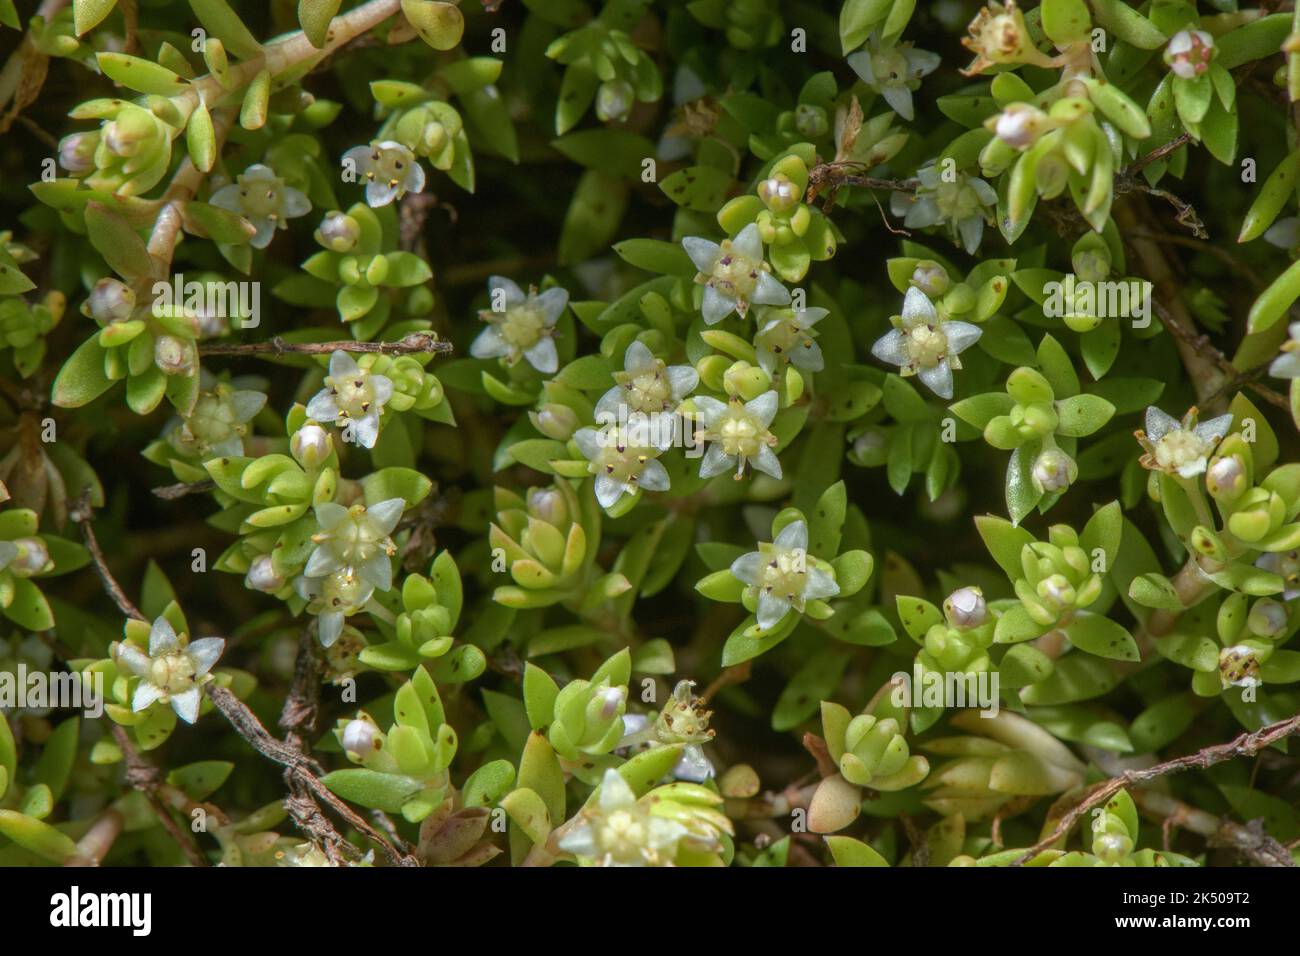 Nuova Zelanda pigmyweed, Crassula helmsii, in fiore sul margine dello stagno, Somerset. Specie di paludi invasive. Foto Stock